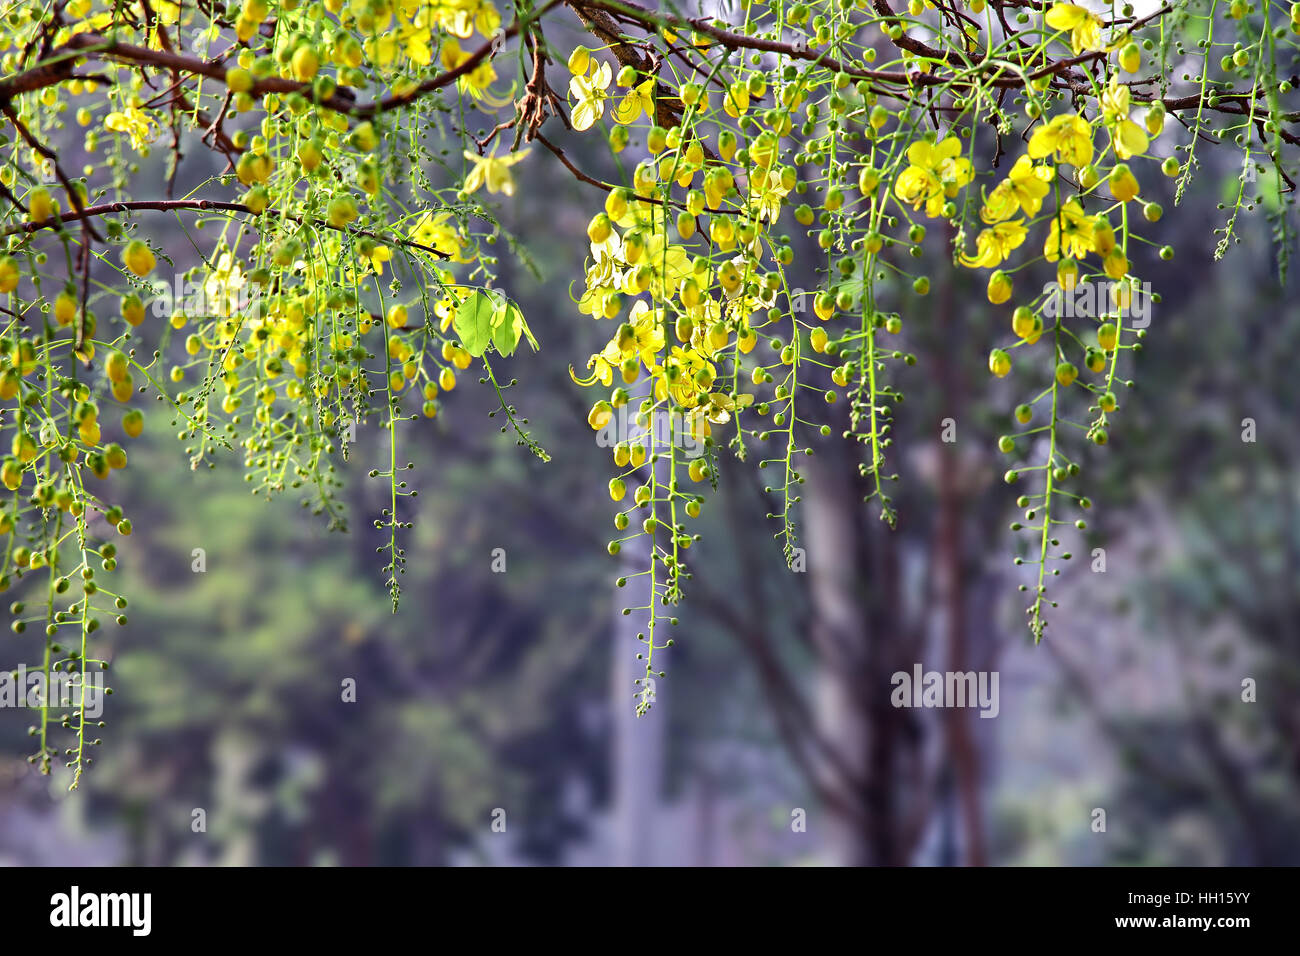 Golden shower, Cassia fistola, bloom nella struttura ad albero. Chiamato konna in Kerala, India ed è parte degli Indù Vishu festival. Anche il fiore nazionale della Thailandia. Foto Stock